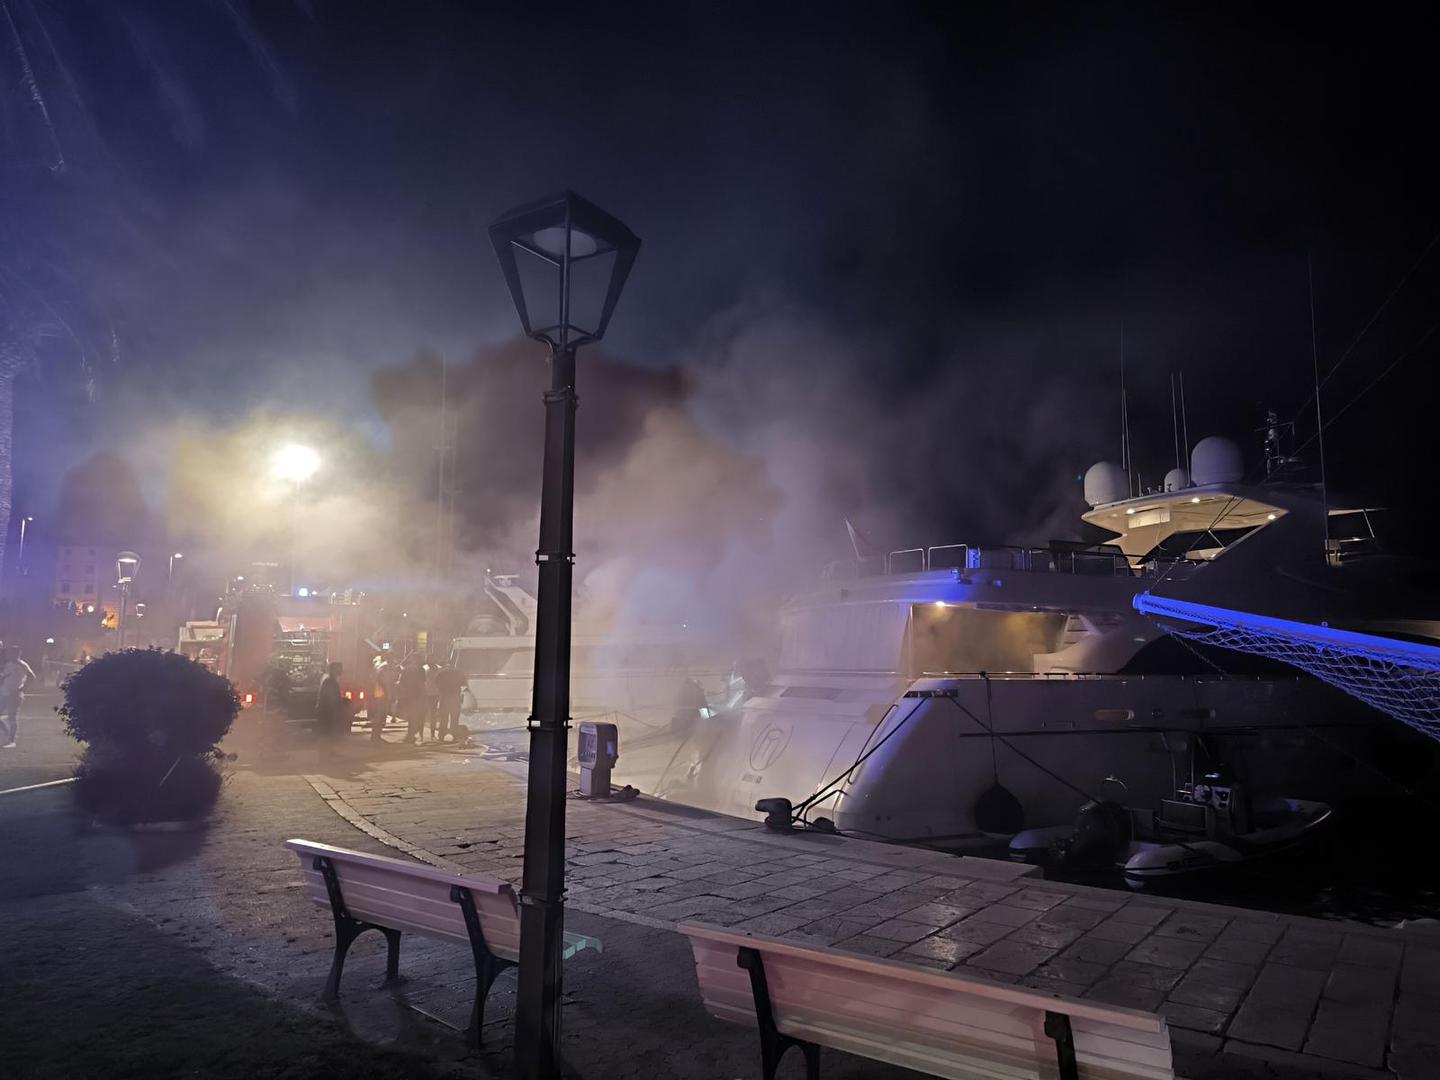 Noćas je u gradskoj luci u Makarskoj izgorjela jahta